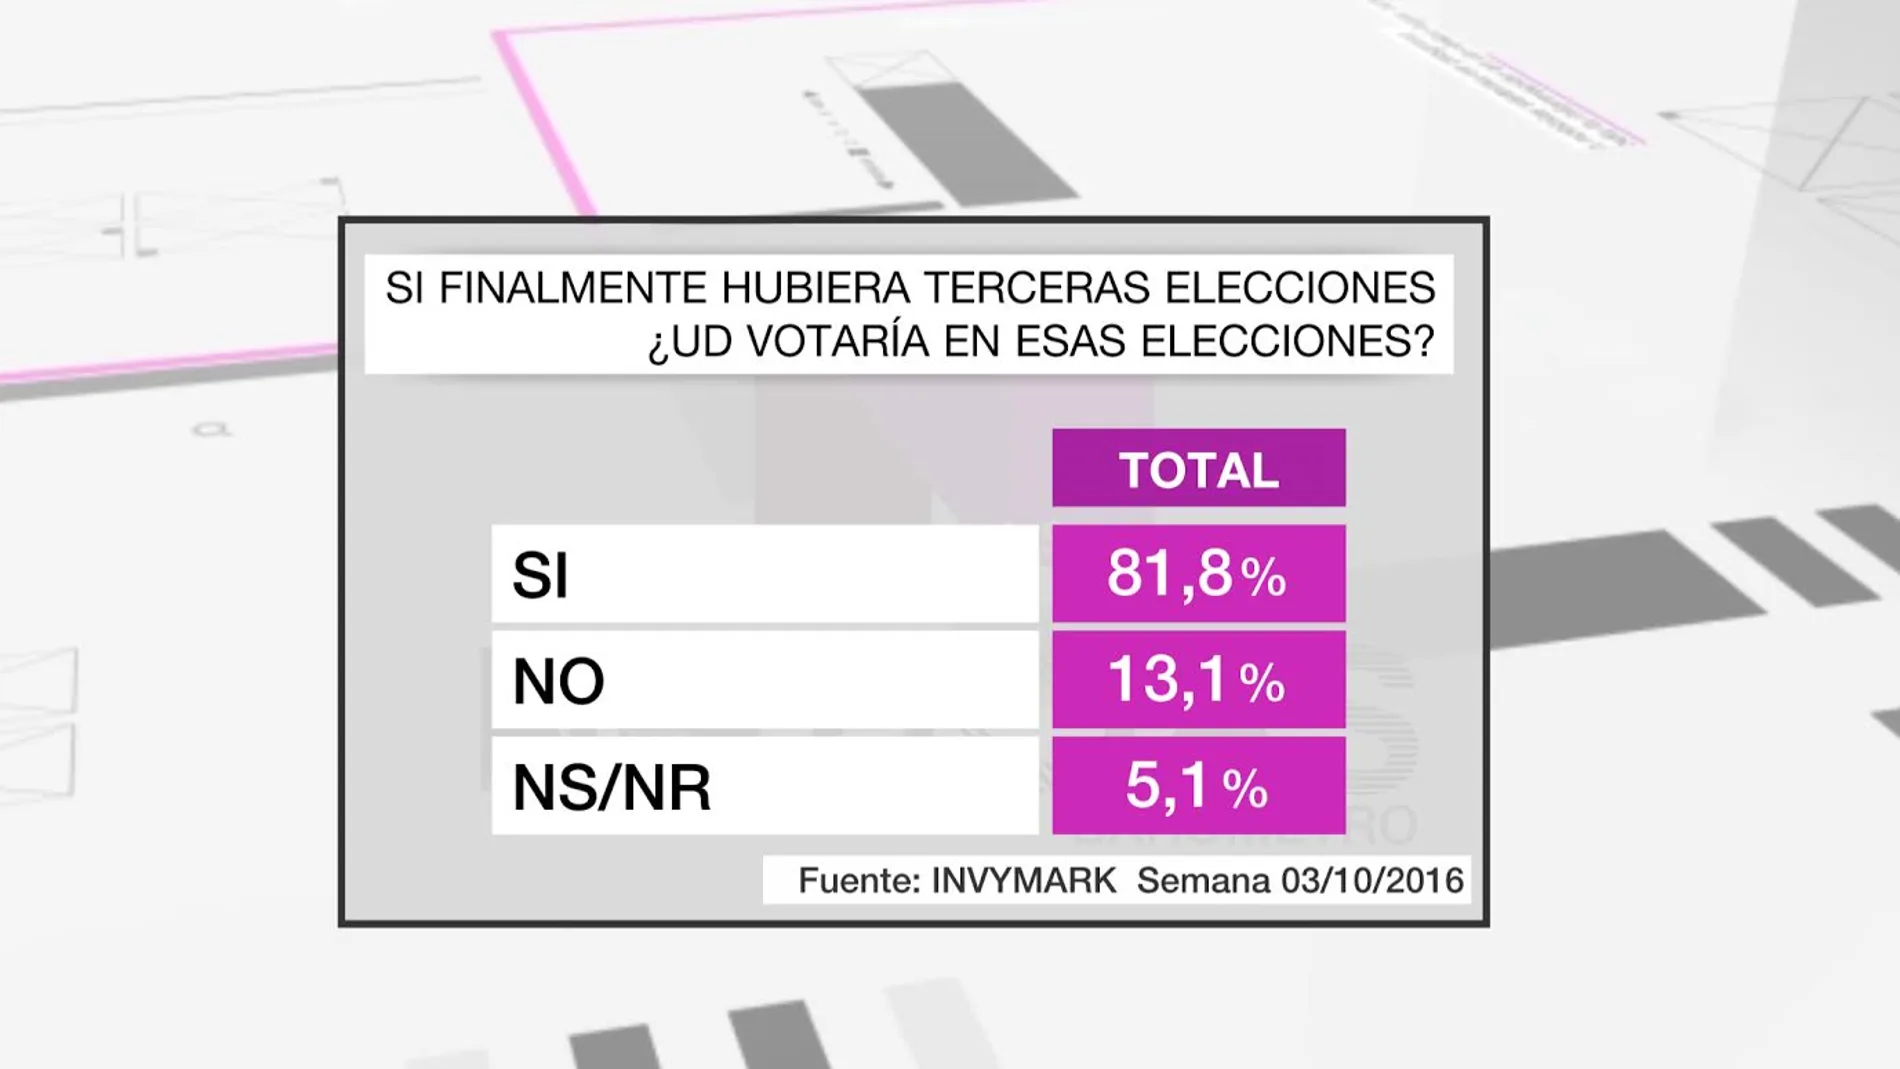 La mayoría de los españoles (81,8%) sigue dispuesta a votar en unas terceras elecciones